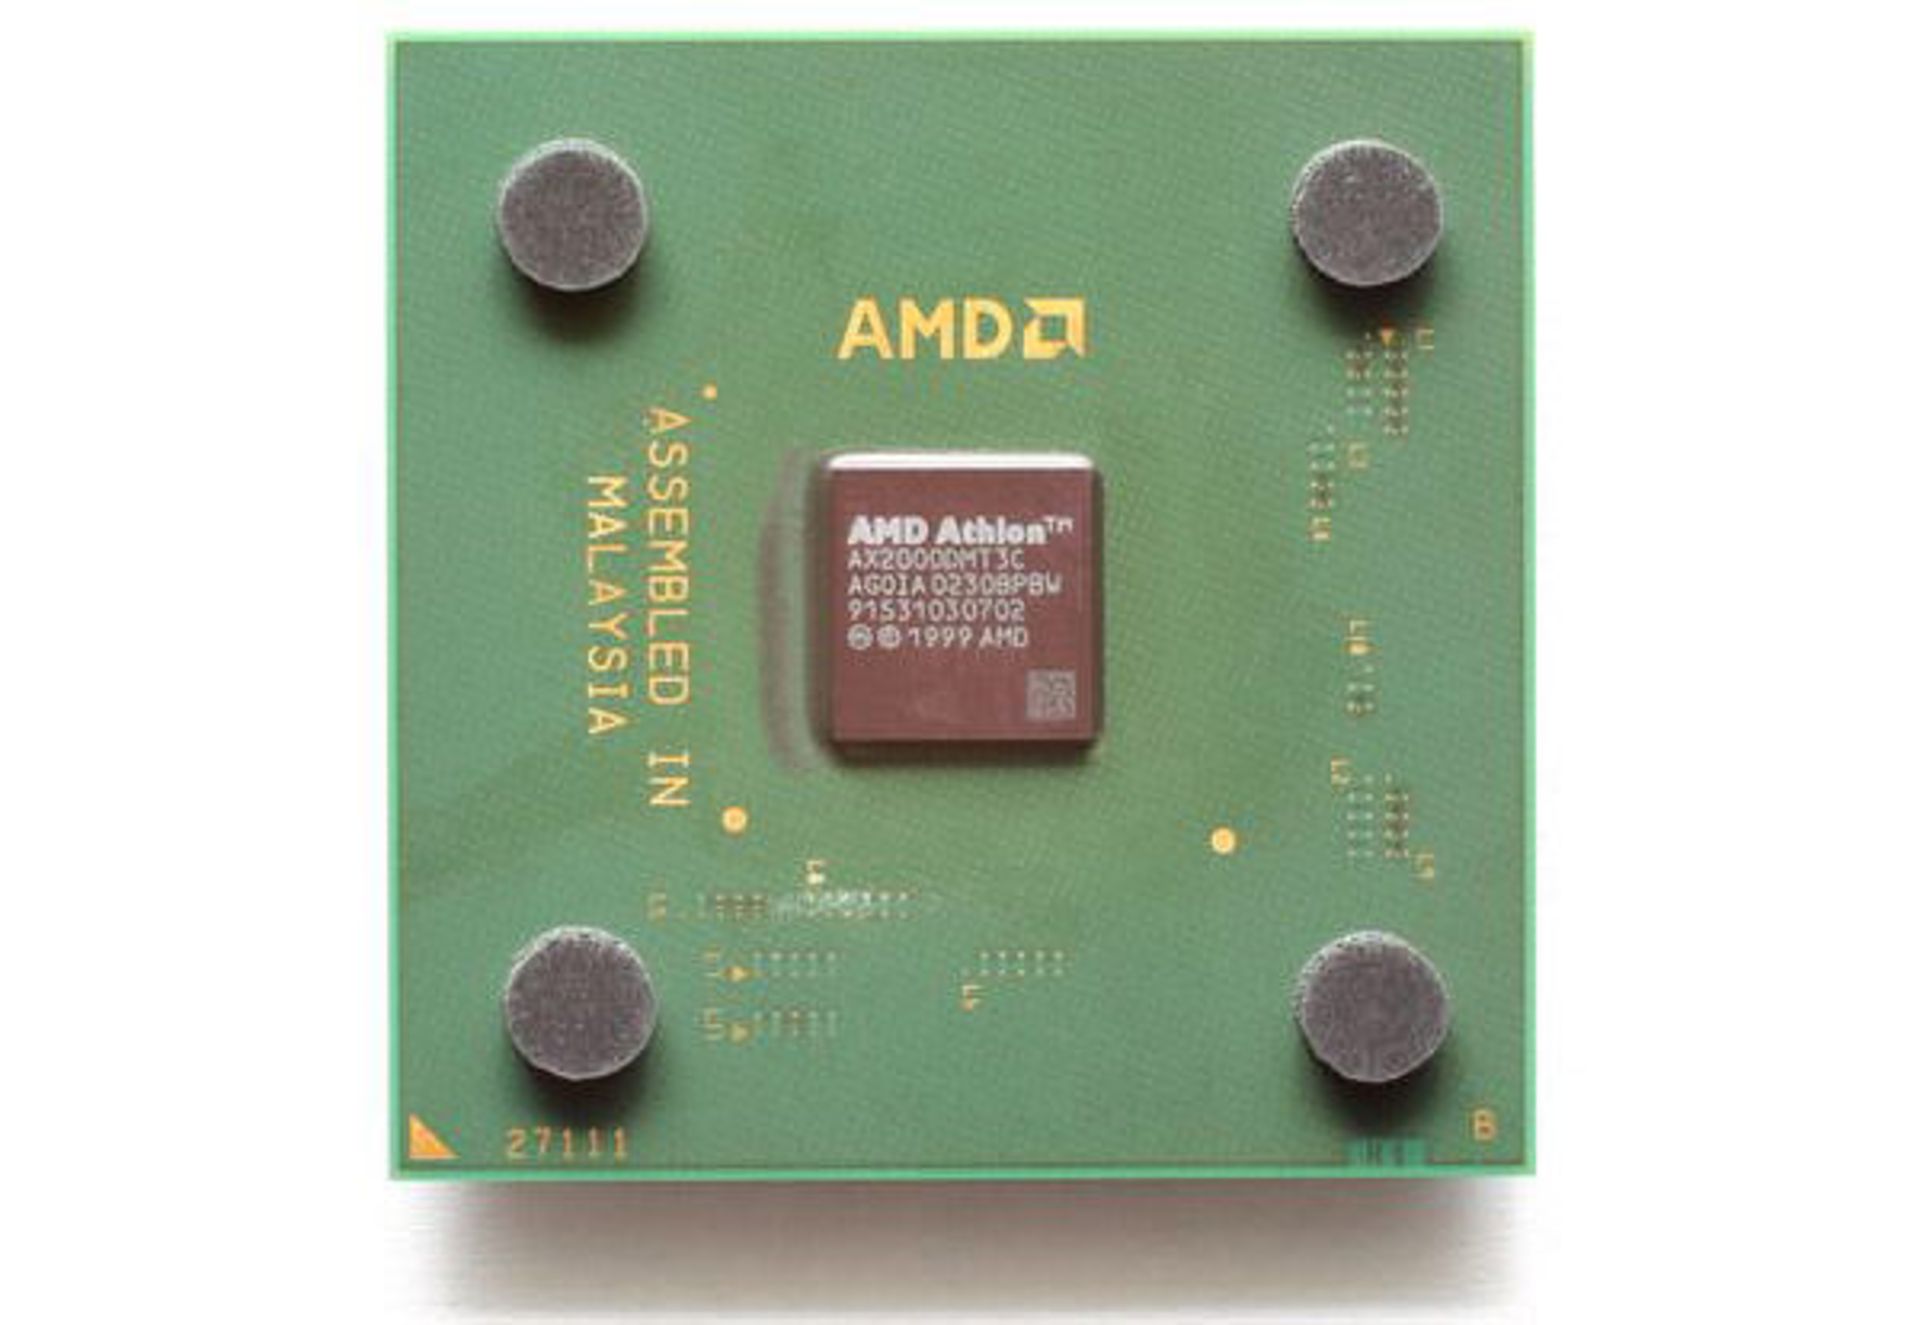 AMD K7: Athlon Palomino/XP